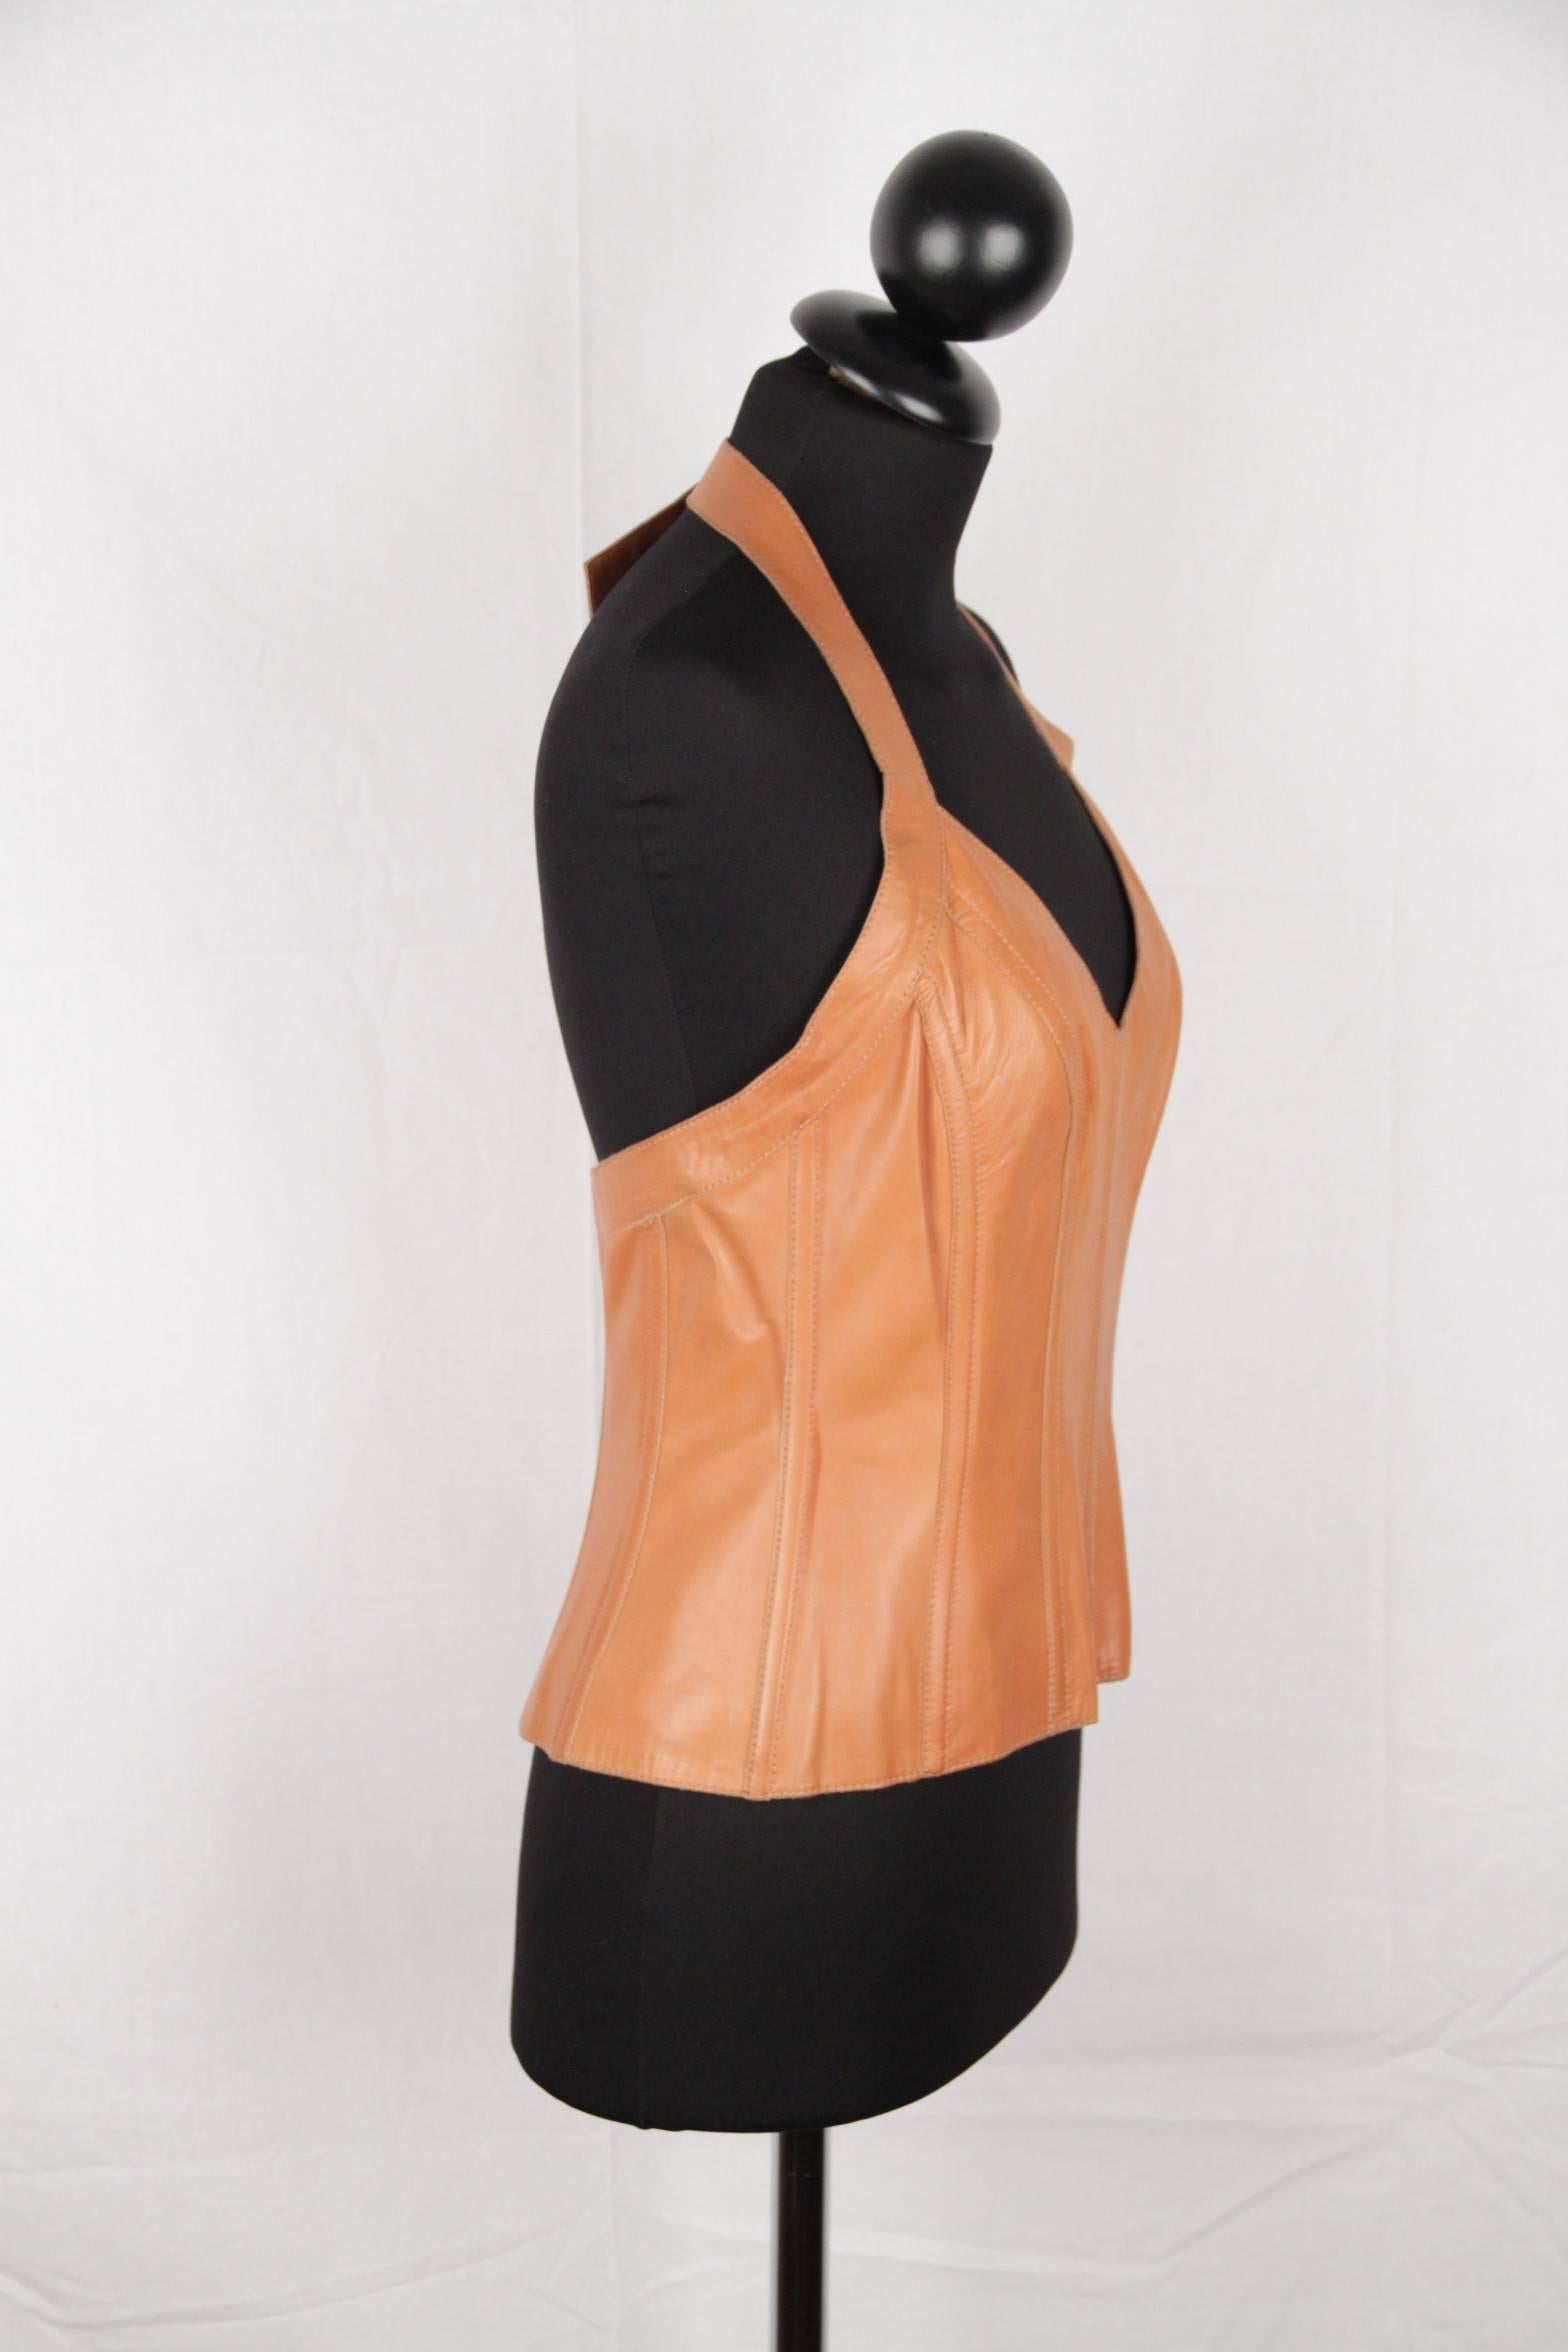 Orange DOLCE & GABBANA Tan Leather HALTERNECK TOP Size 42